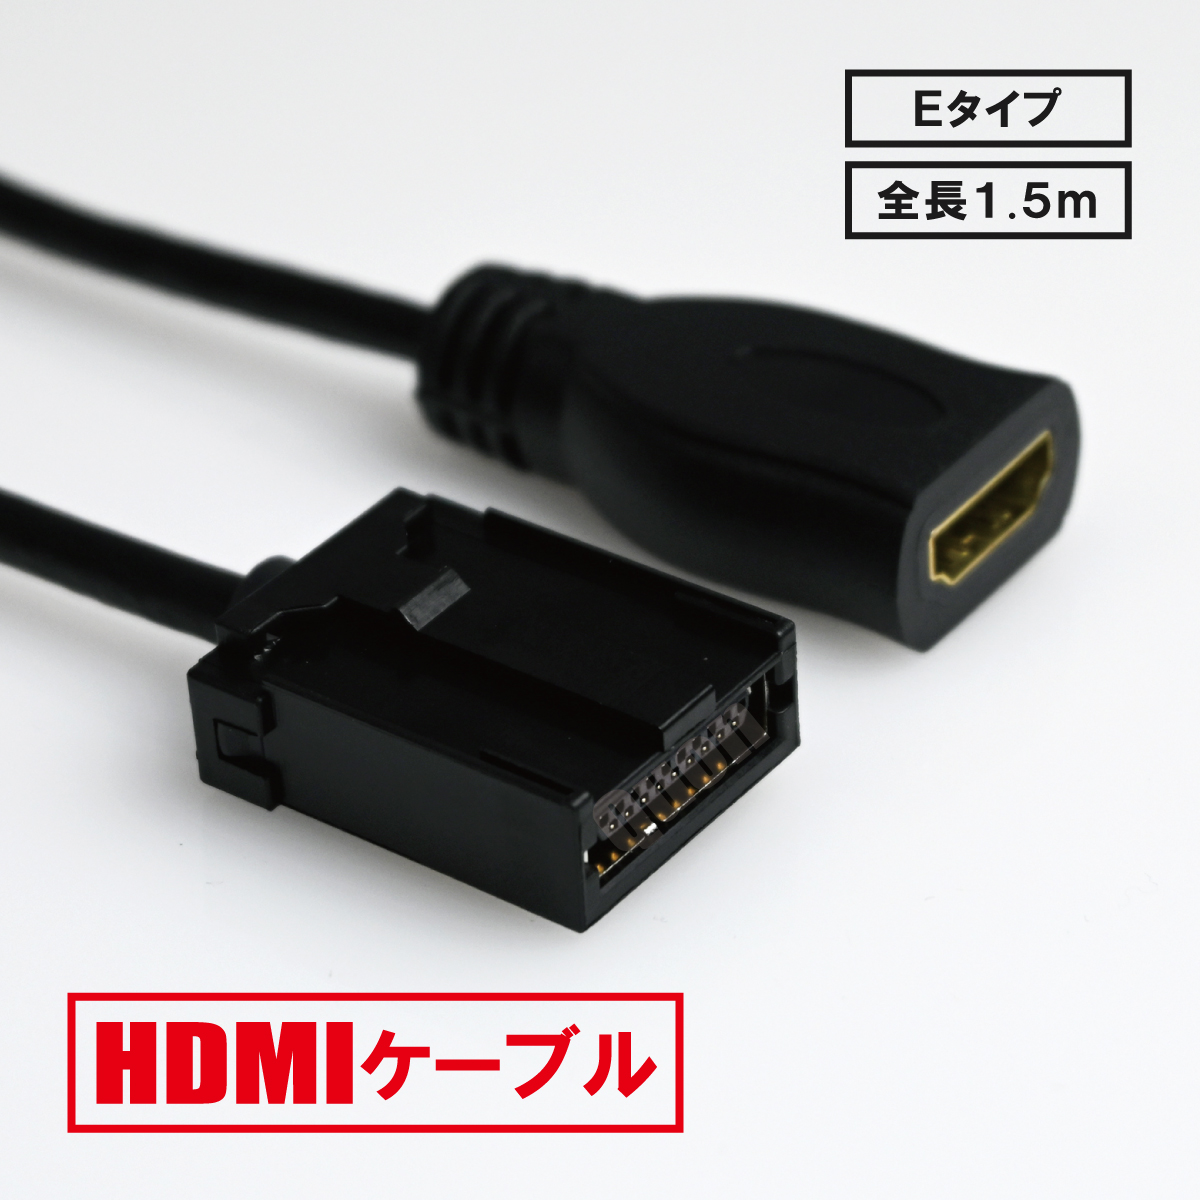 トヨタ NSZT-Y64T HDMI Eタイプ 変換 ケーブル コード 車用 カーナビでyoutubeを見る 車で見る 車 カーナビ用 パーツ カスタム 純正ナビ ミラーリング スマホ